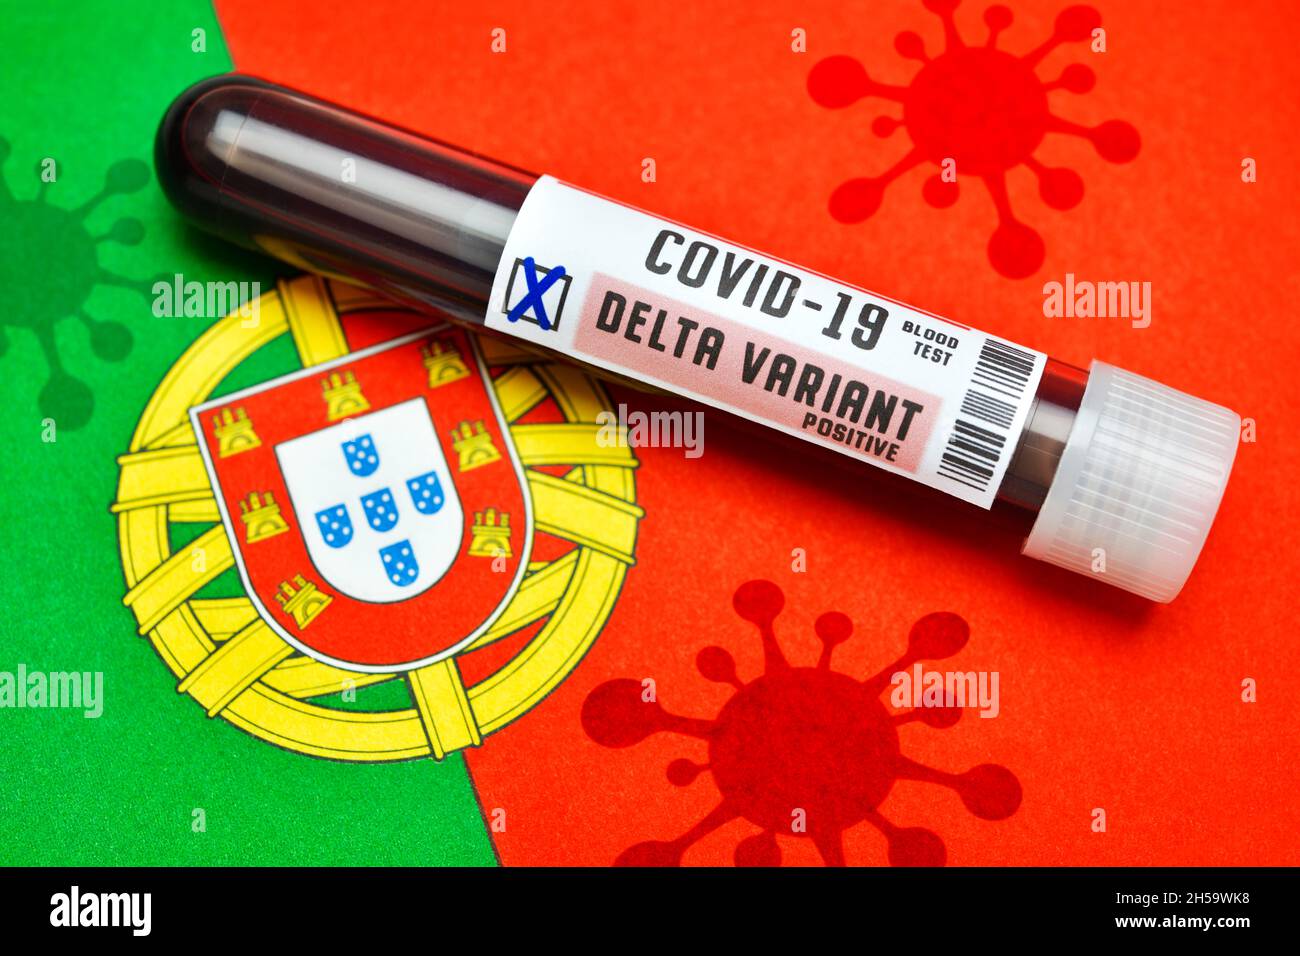 FOTOMONTAGE, Blutprobe mit Coronavirus Delta-Variante B.1.617.2 auf Fahne von Portugal mit Schatten von Coronaviren Stock Photo